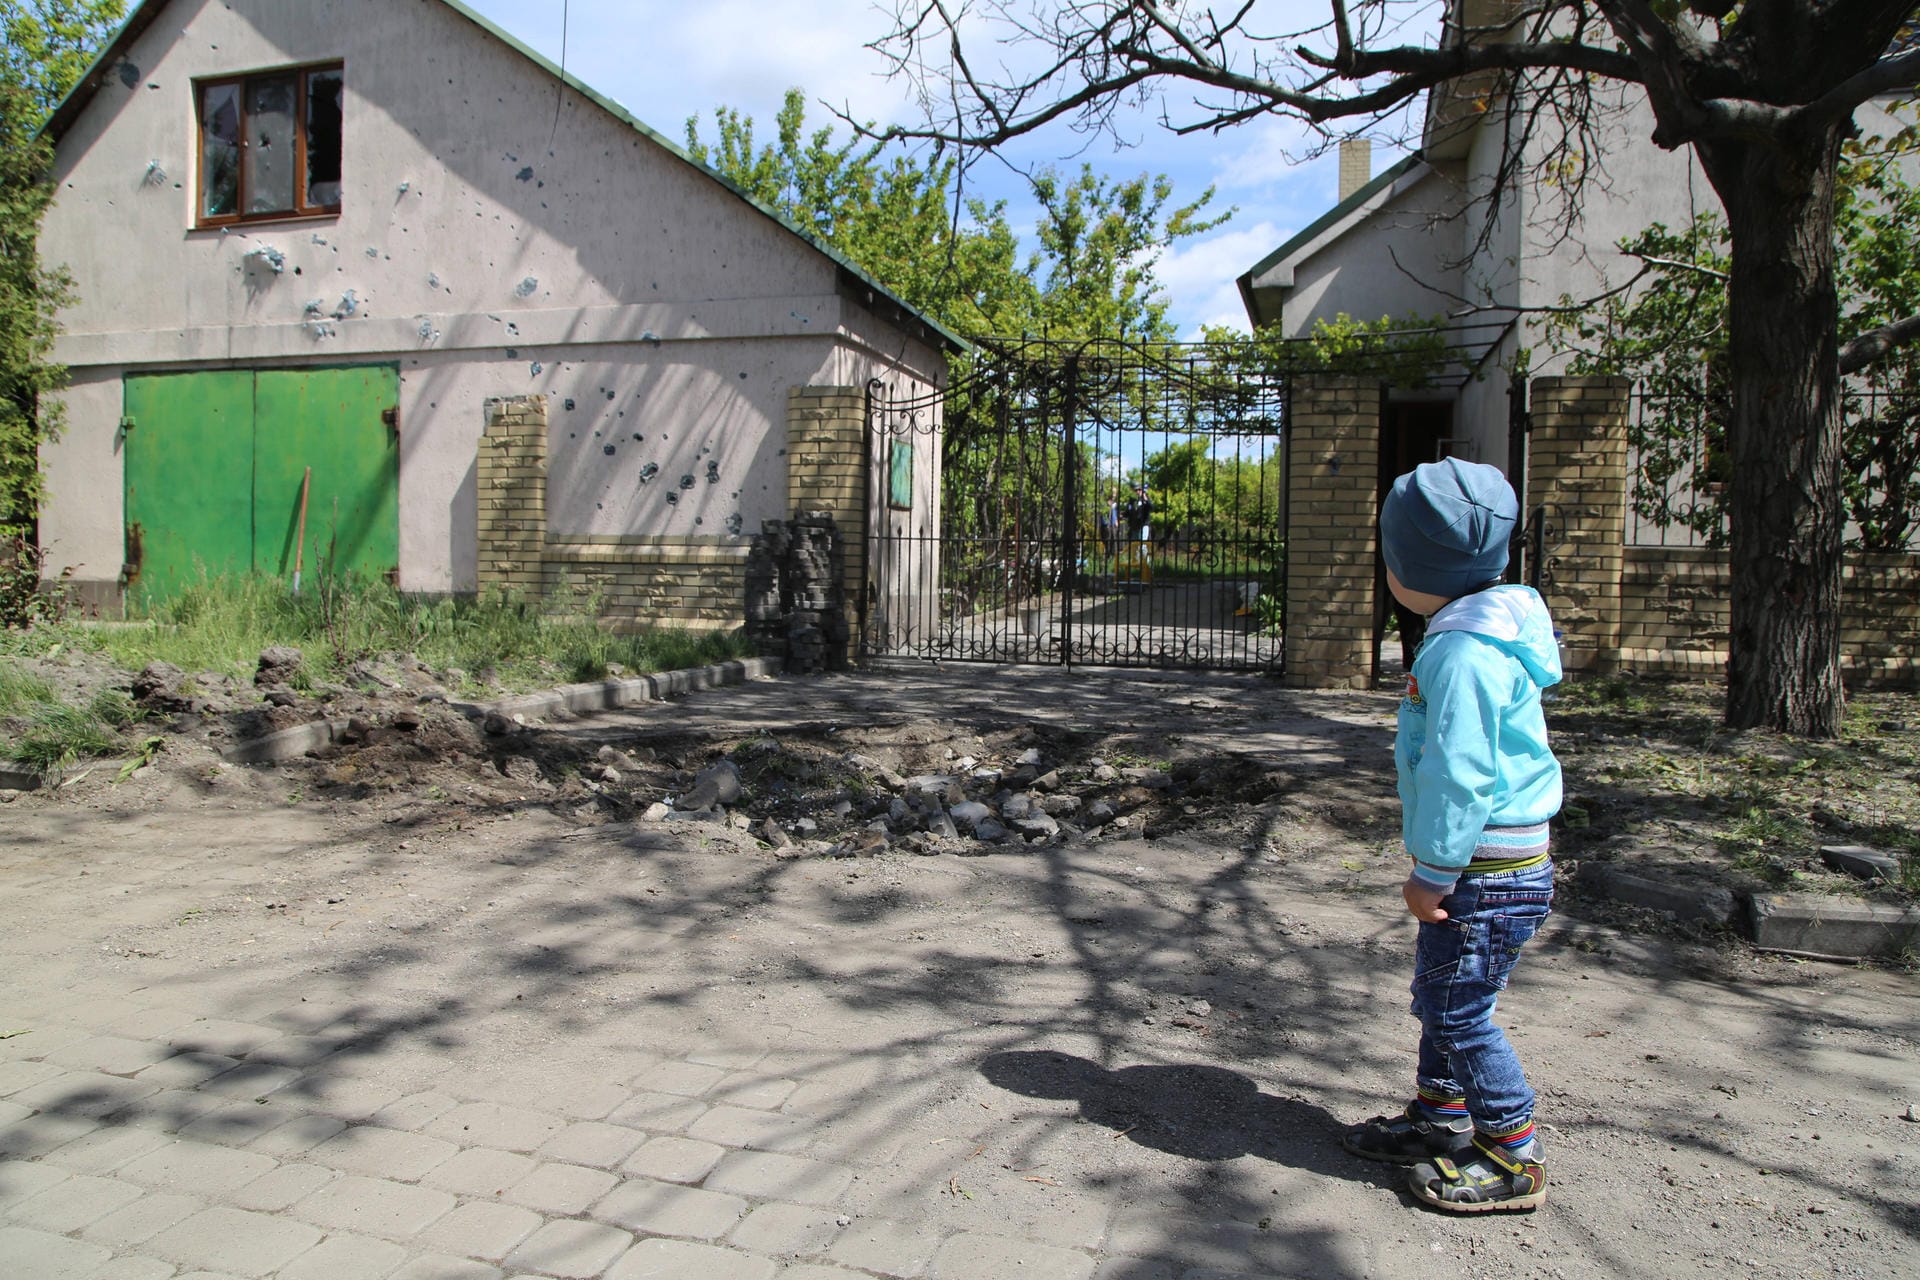 Im Osten der Ukraine verläuft die Grenze zwischen Regierungs- und Rebellengebieten. Landminen und Straßenschäden isolieren die in der Region lebenden 70.000 Menschen, von denen viele auf eine mobile medizinische Versorgung und humanitäre Hilfe angewiesen sind. Sie sind jetzt auf sich allein gestellt. Trotz des vereinbarten Waffenstillstands ist hier die zivile Wasser- und Stromversorgung immer wieder unterbrochen. Dazu kommt die Angst vor Granatenangriffen und gewalttätigen Zusammenstößen.